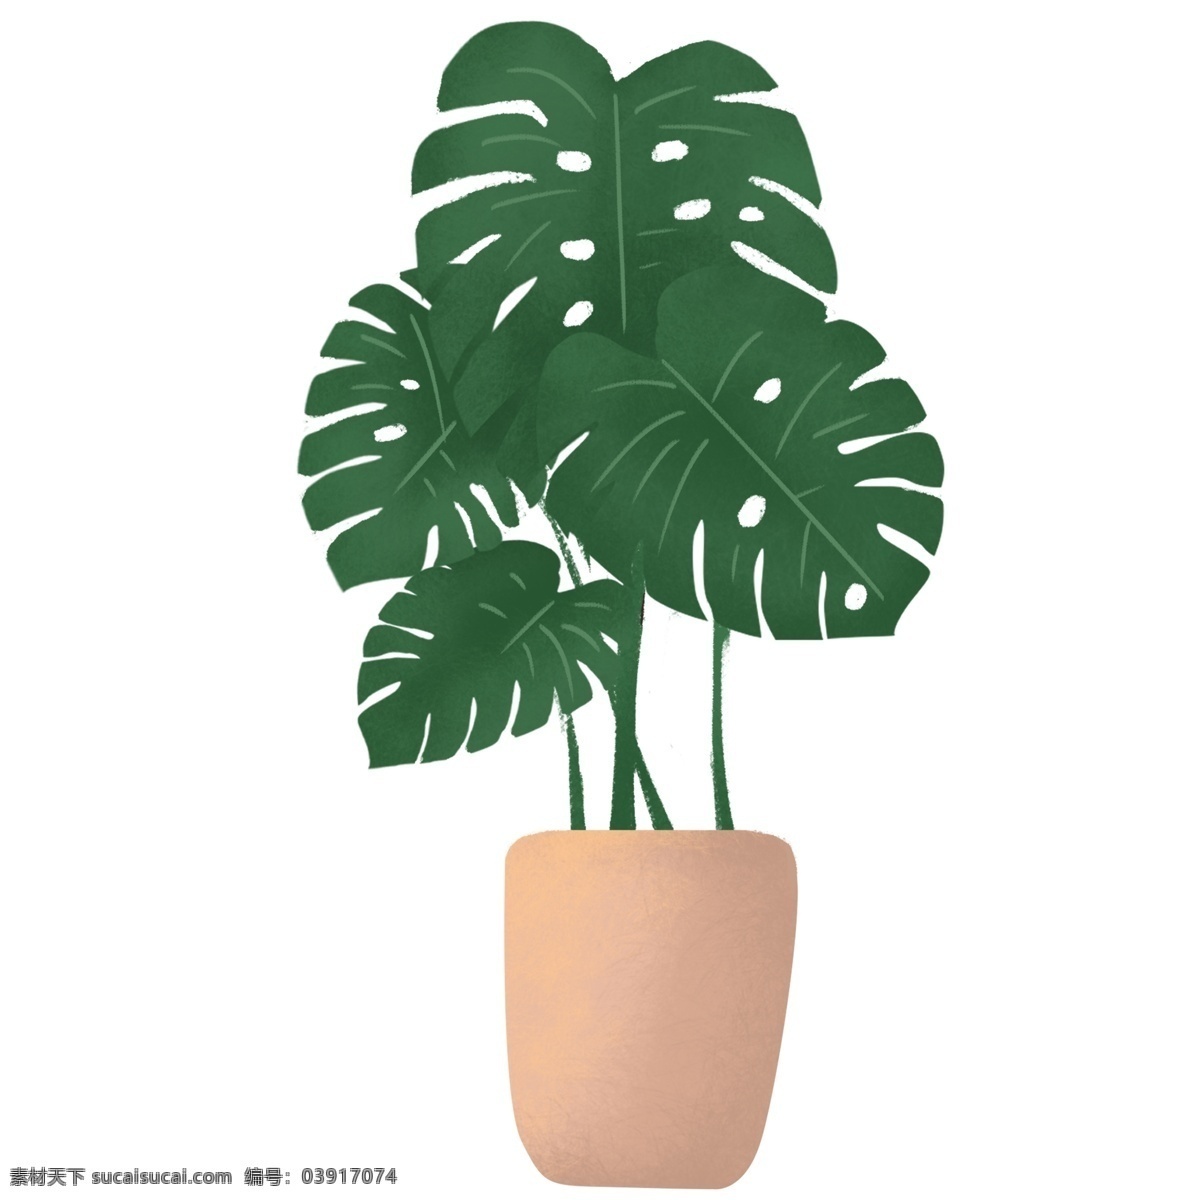 绿色 盆栽 植物 装饰 插画 叶子 卡通 彩色 小清新 创意 手绘 绘画元素 现代 简约 图案